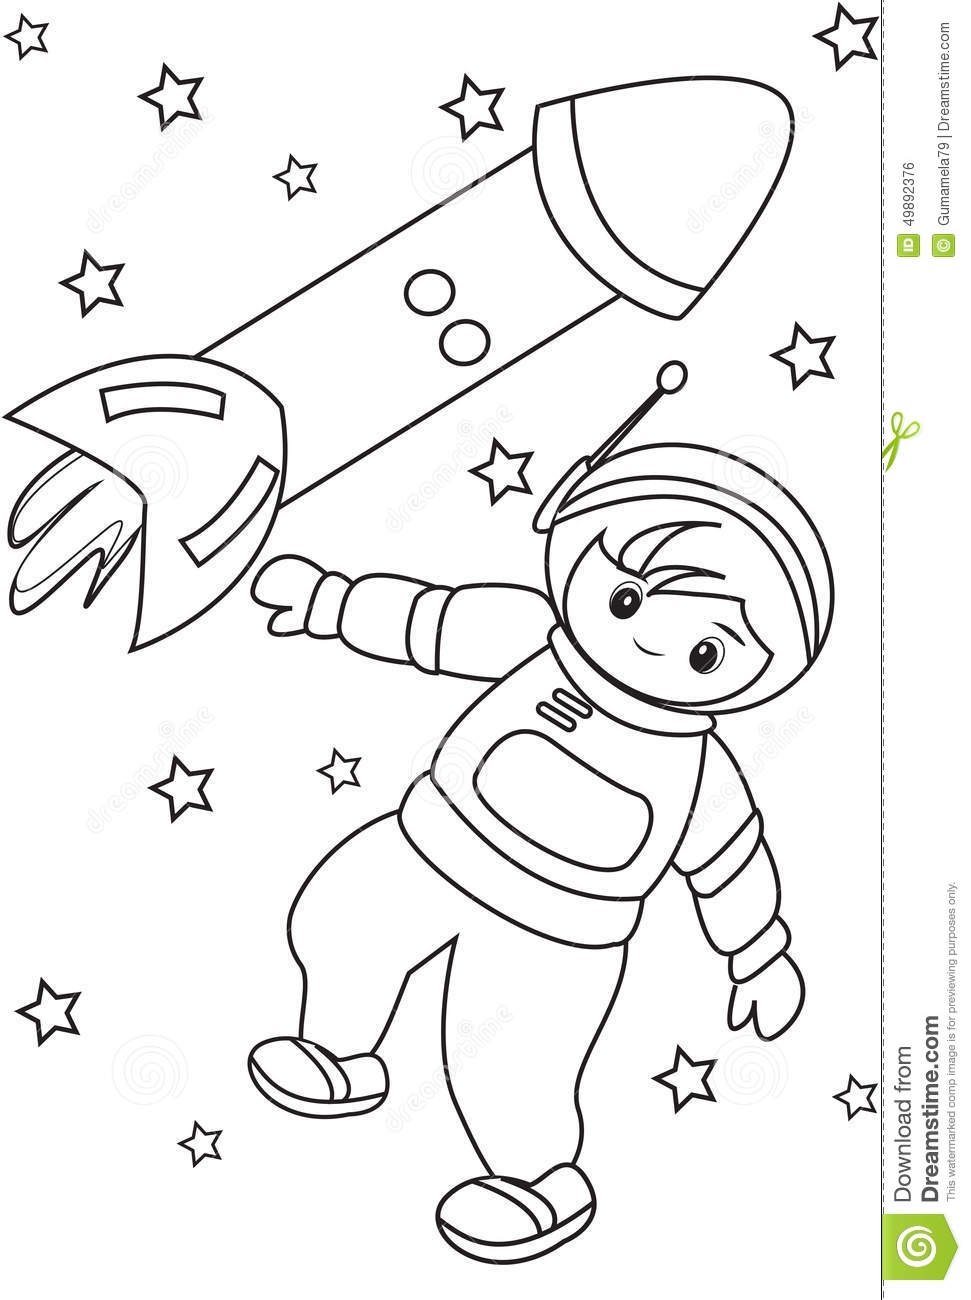 Распечатать космонавта для поделки. Космос раскраска для детей. Космонавтика раскраски для детей. Космонавт раскраска для детей. Раскраска. В космосе.